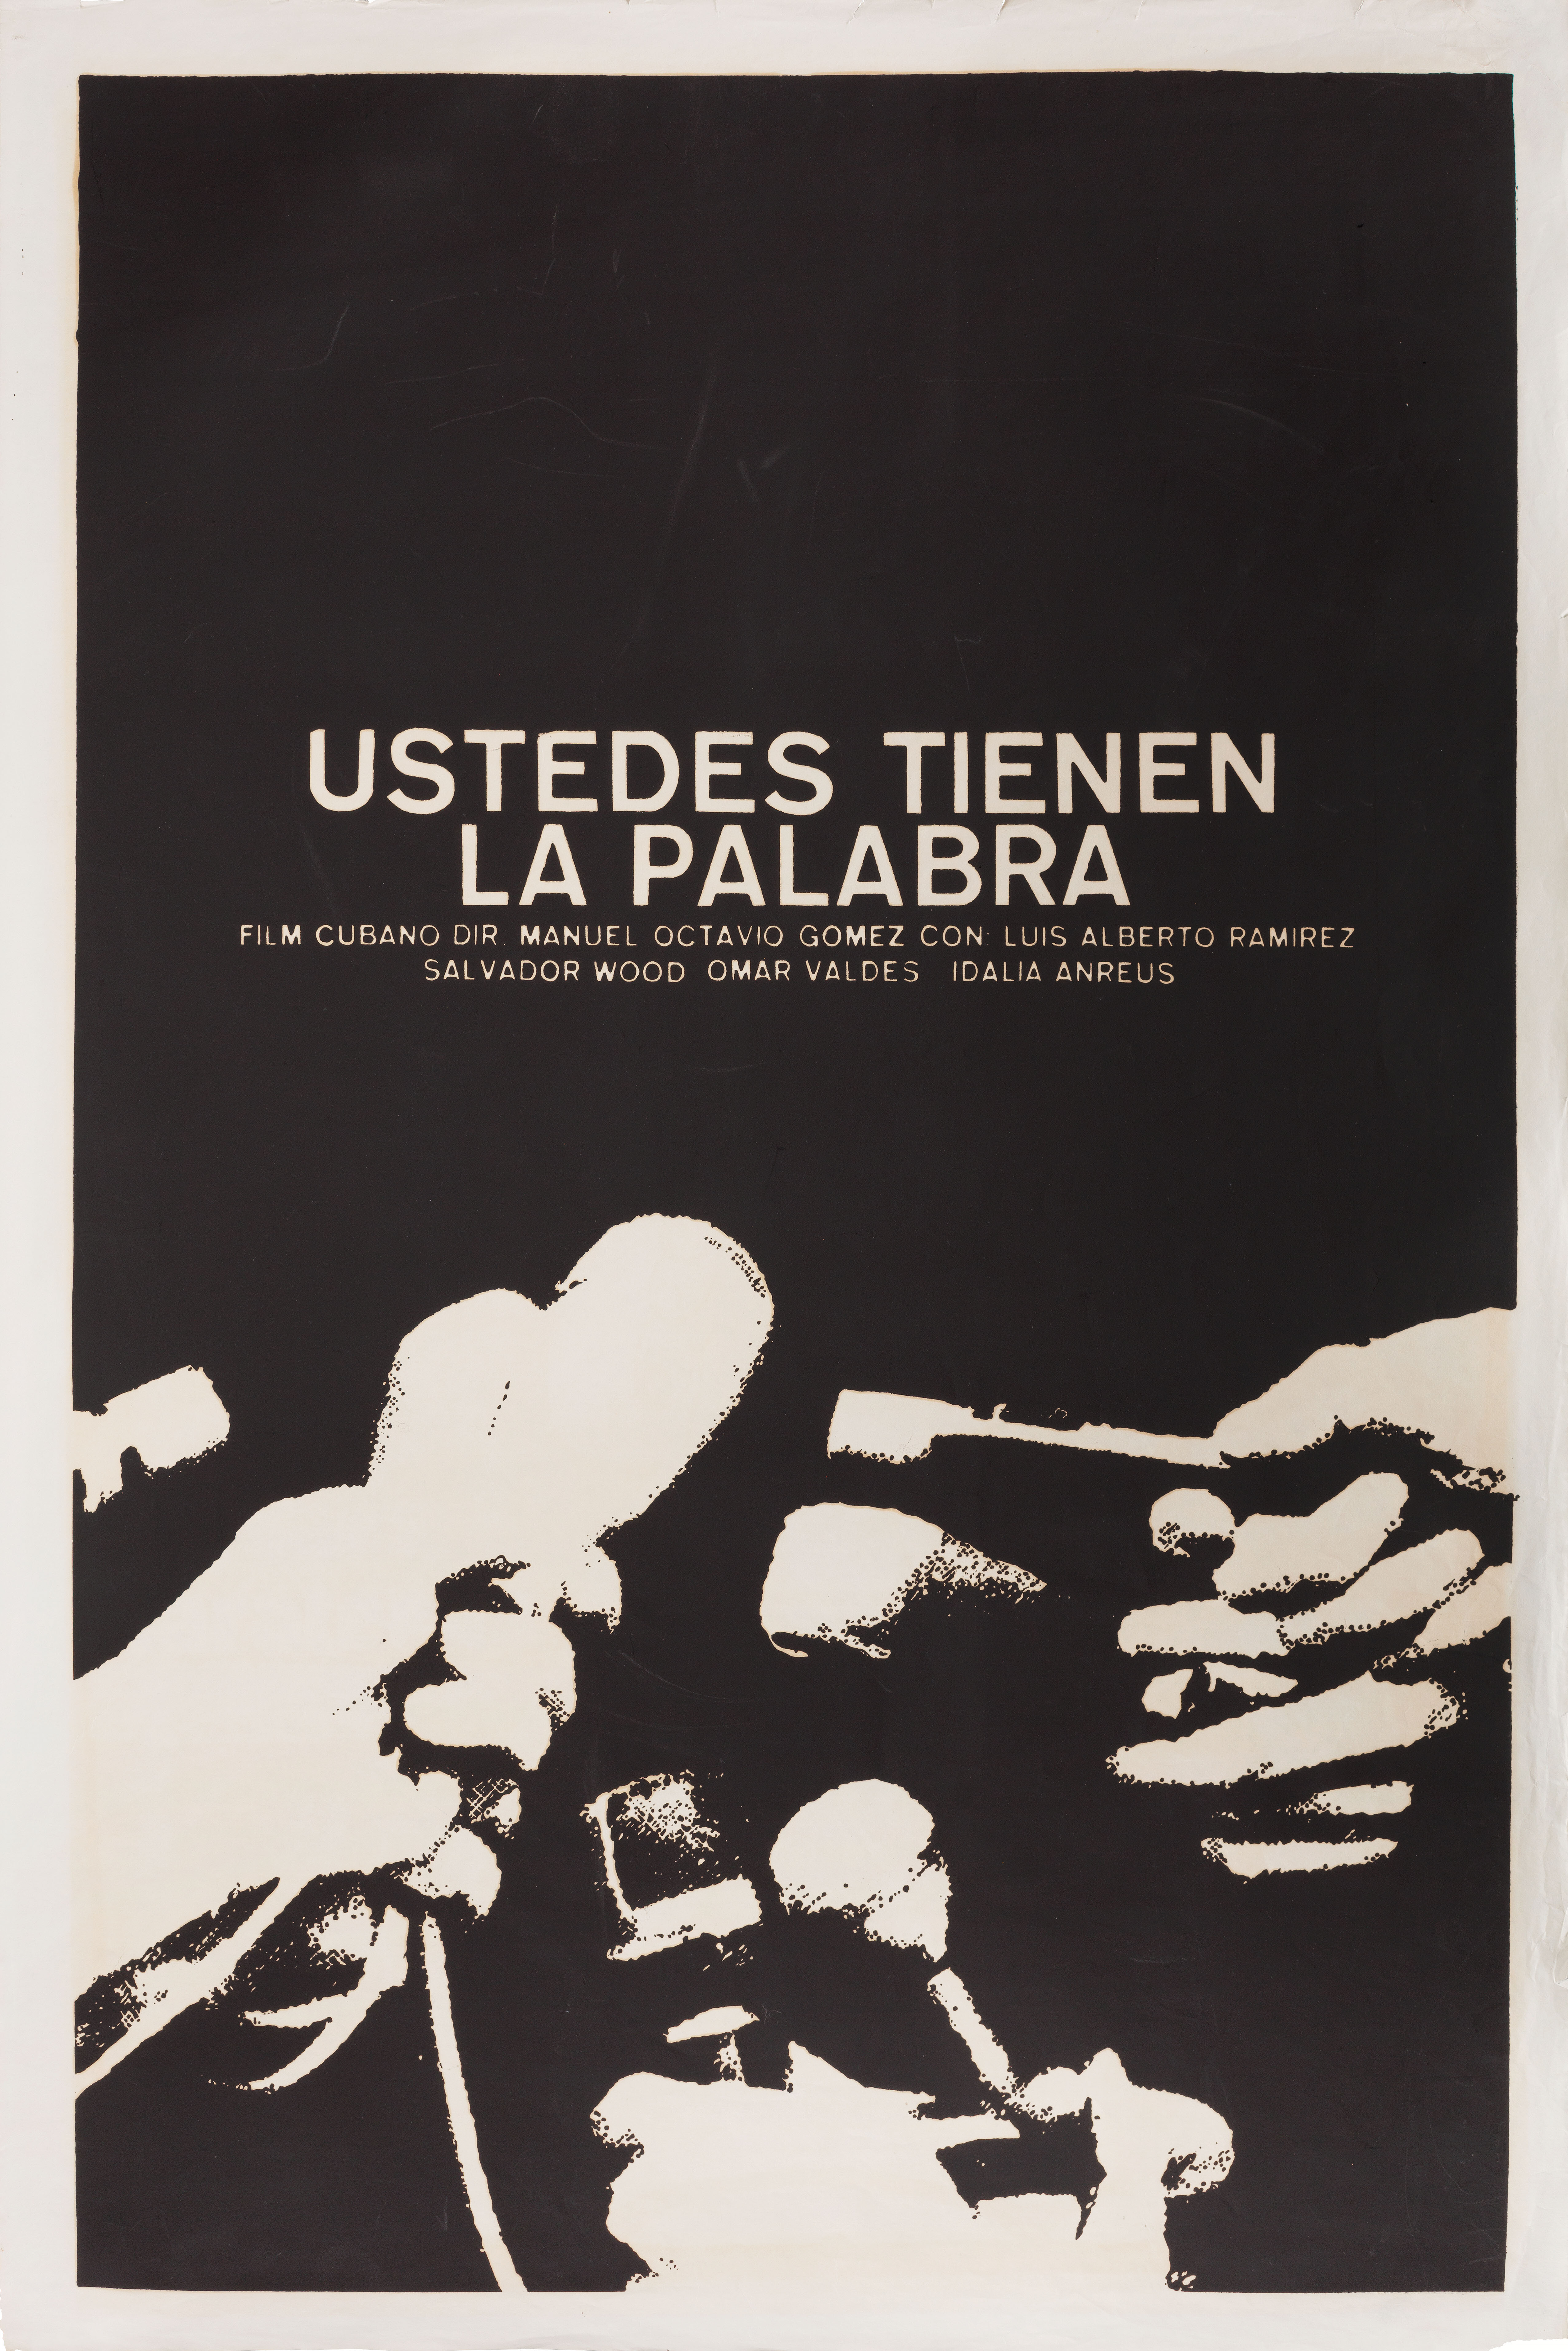 
Вам слово (Ustedes tienen la palabra, 1974), режиссёр Мануэль Октавио Гомес, кубинский плакат к фильму, 1974 год